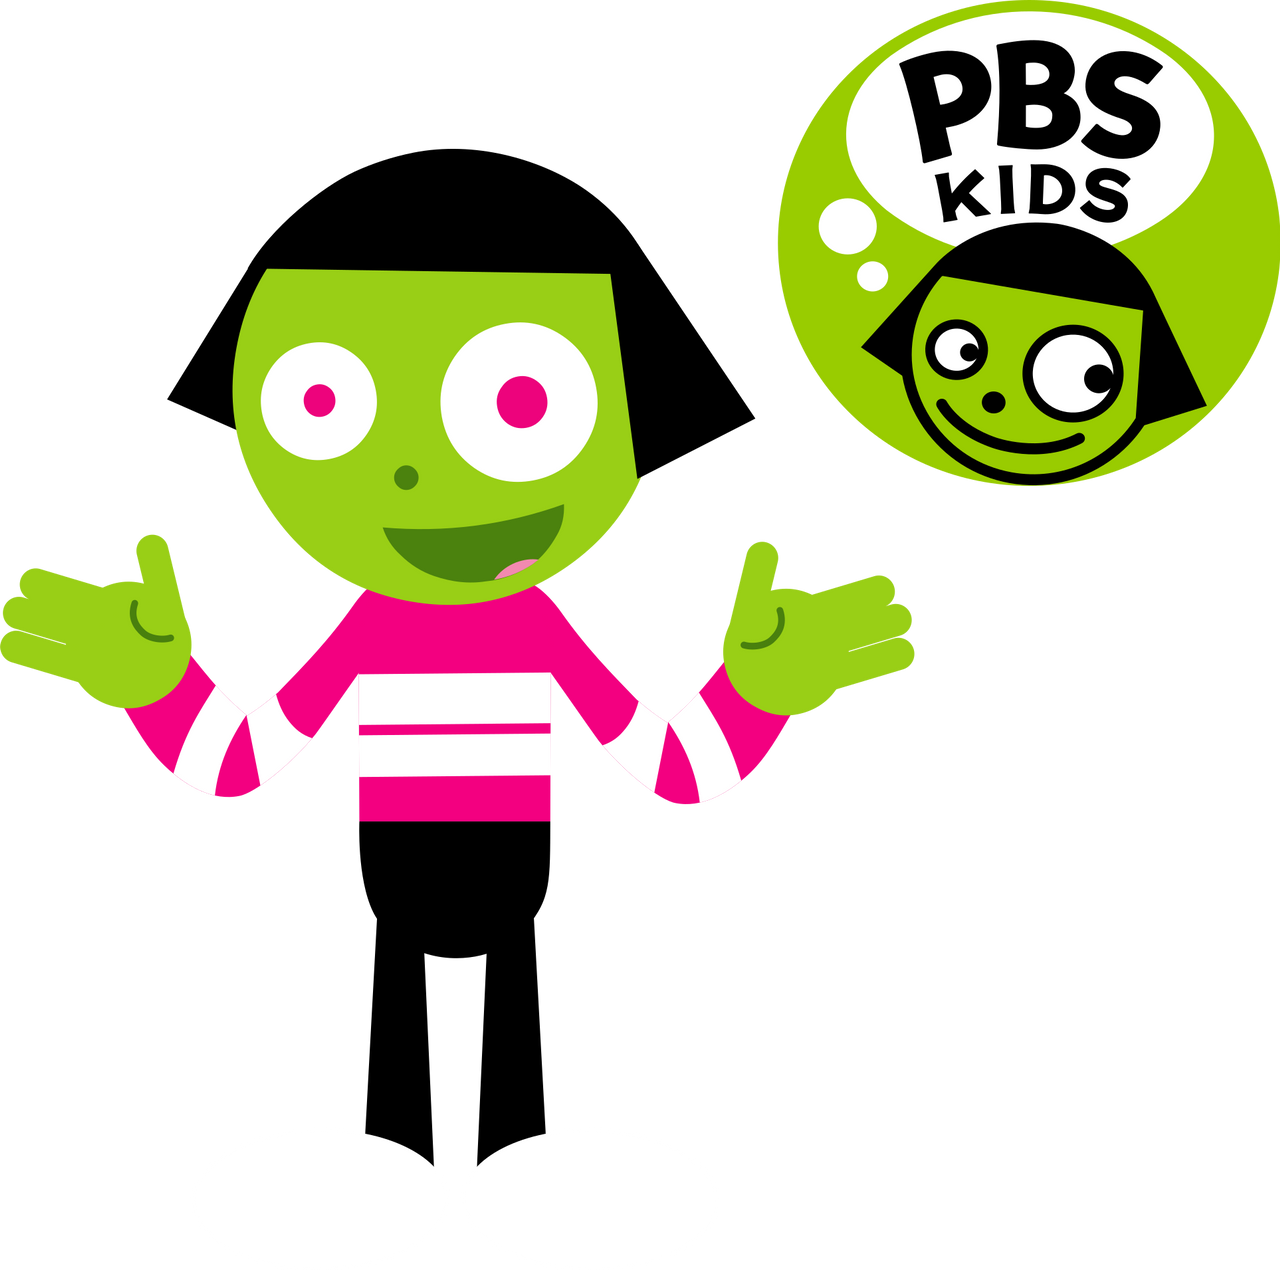 PBS Kids Digital Art - Dot in Lyric's Style by LittleKJ20 on DeviantArt